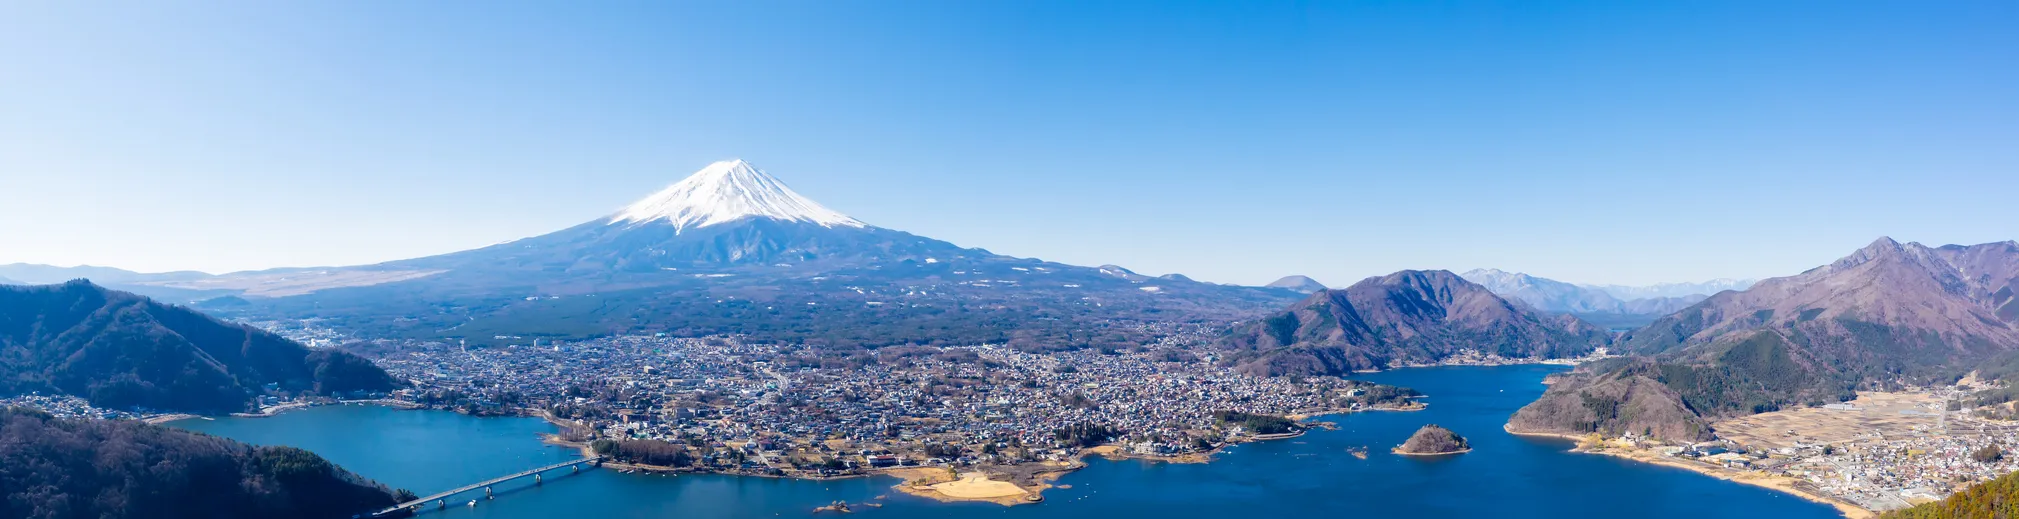 Vue aérienne du mont Fuji et du lac Kawaguchiko, Japon © iStock / Asia-Pacific Images Studio